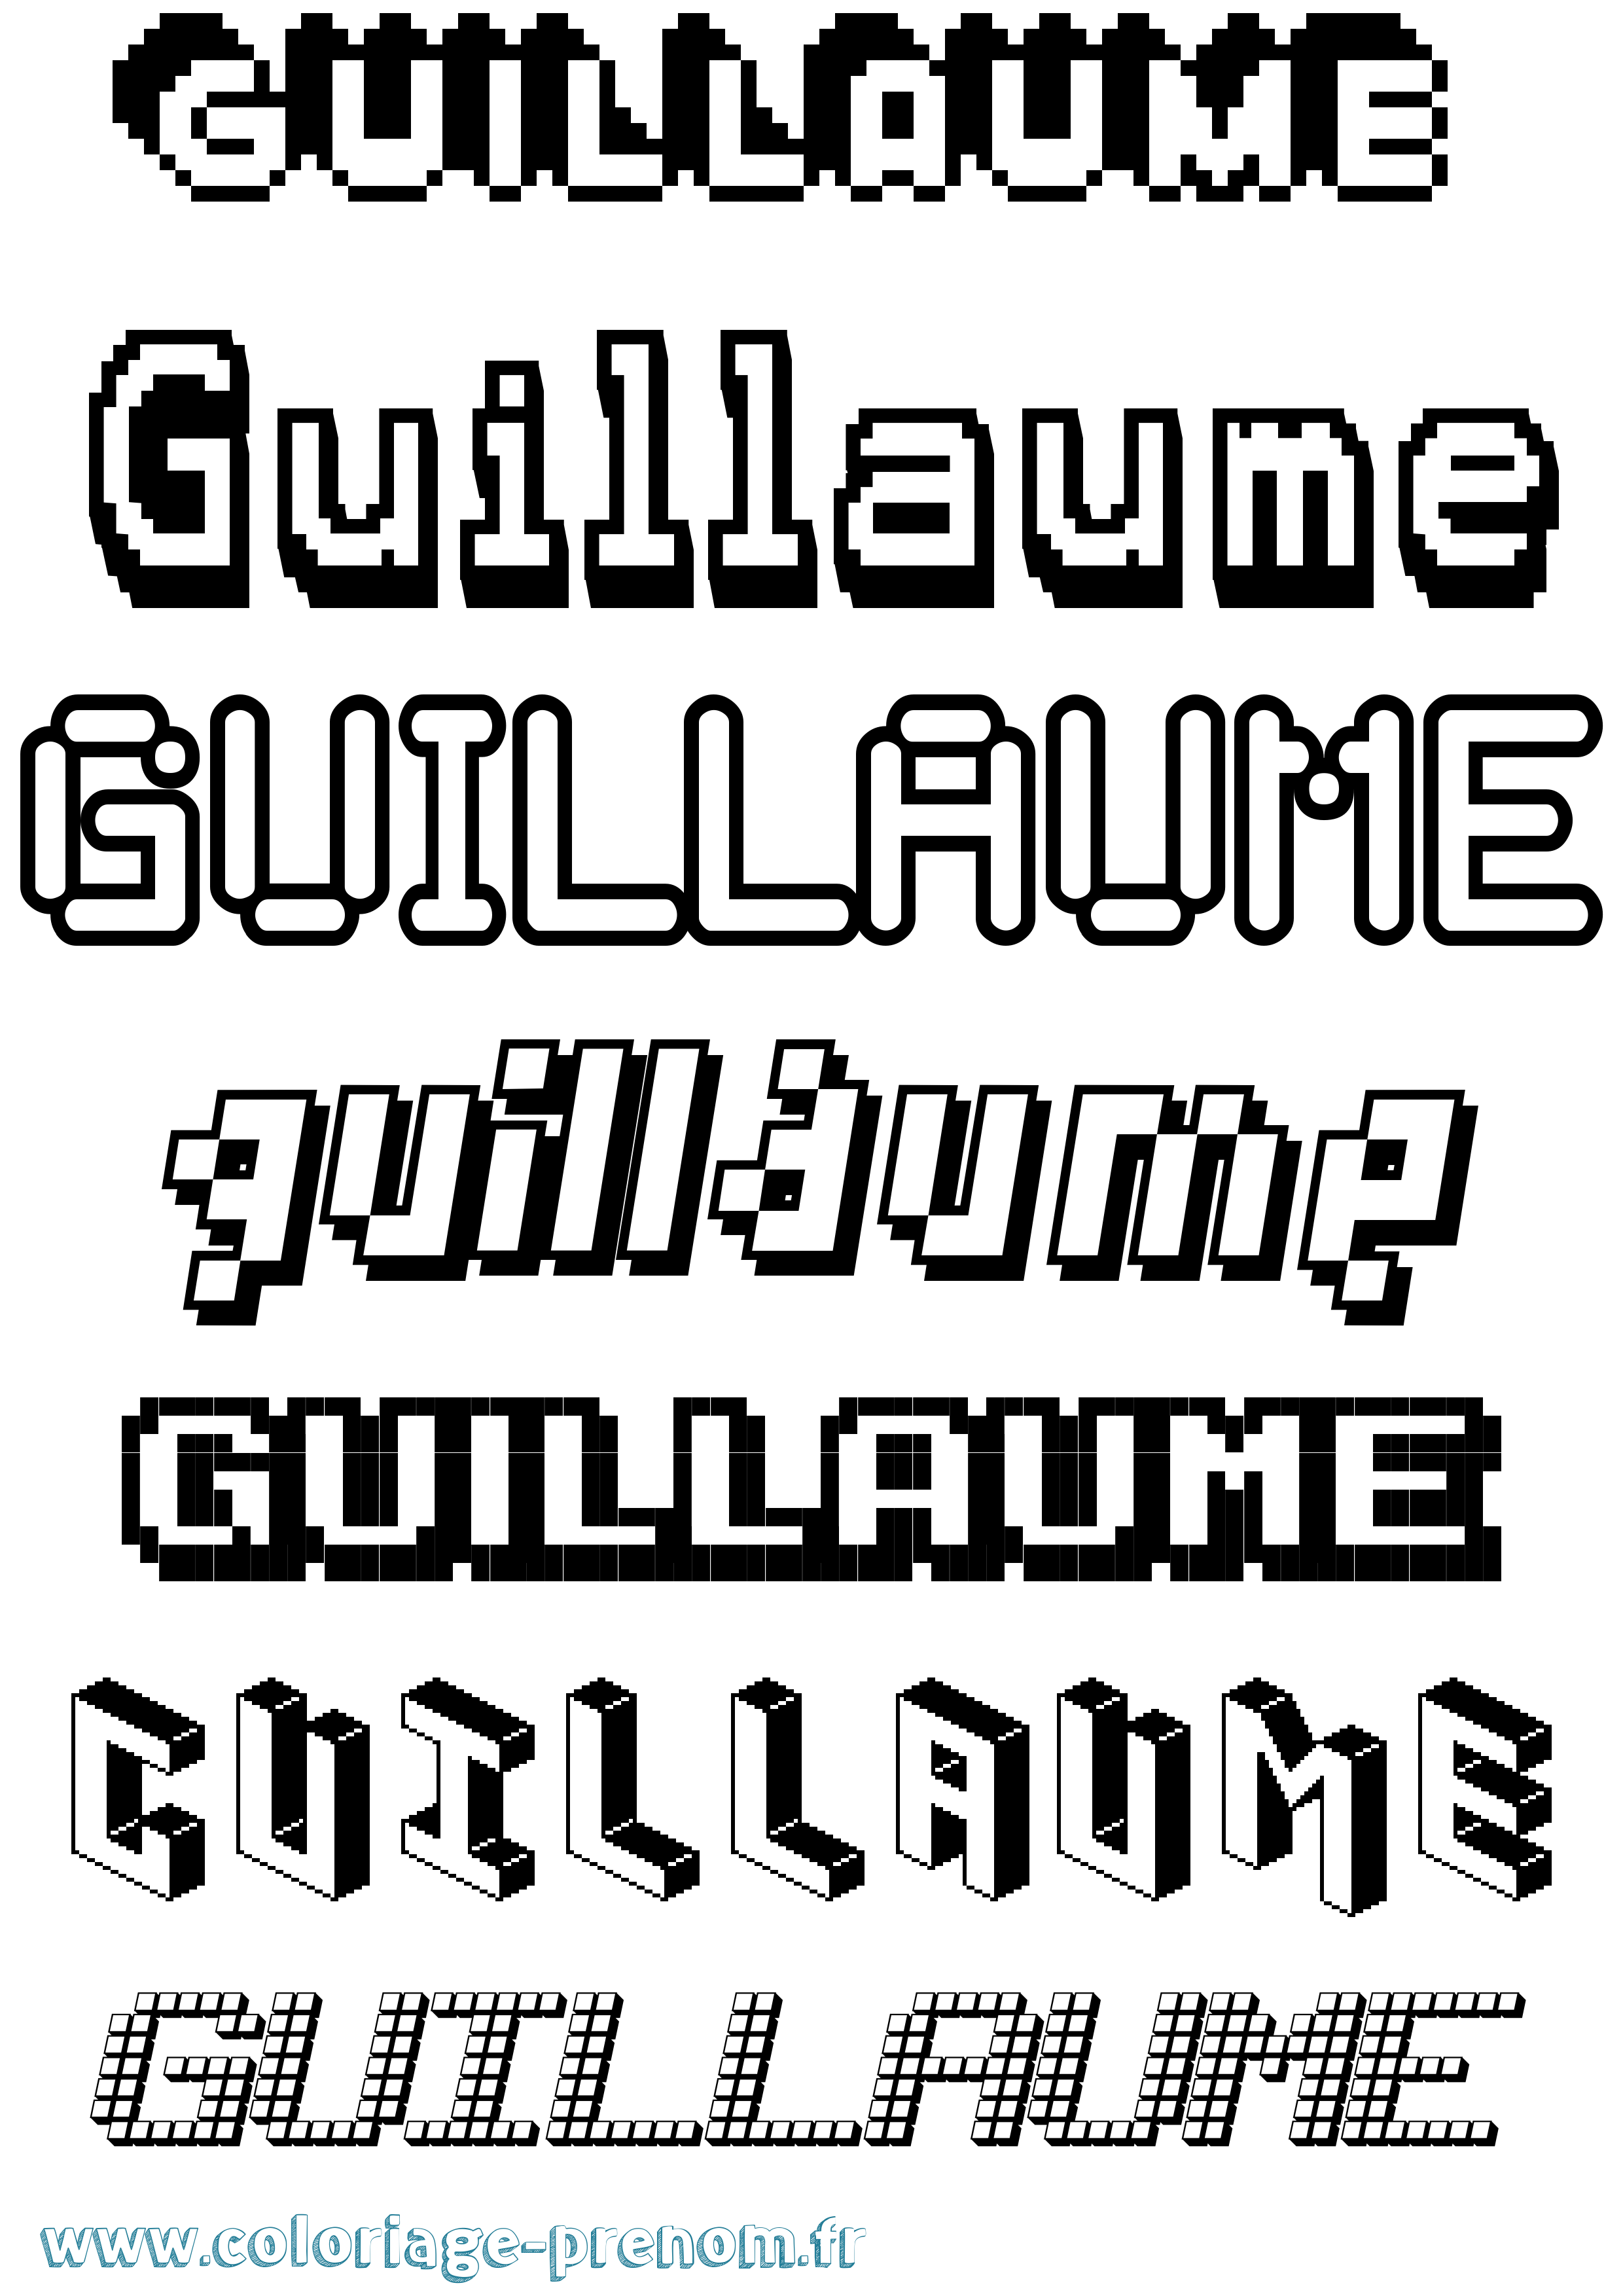 Coloriage prénom Guillaume Pixel